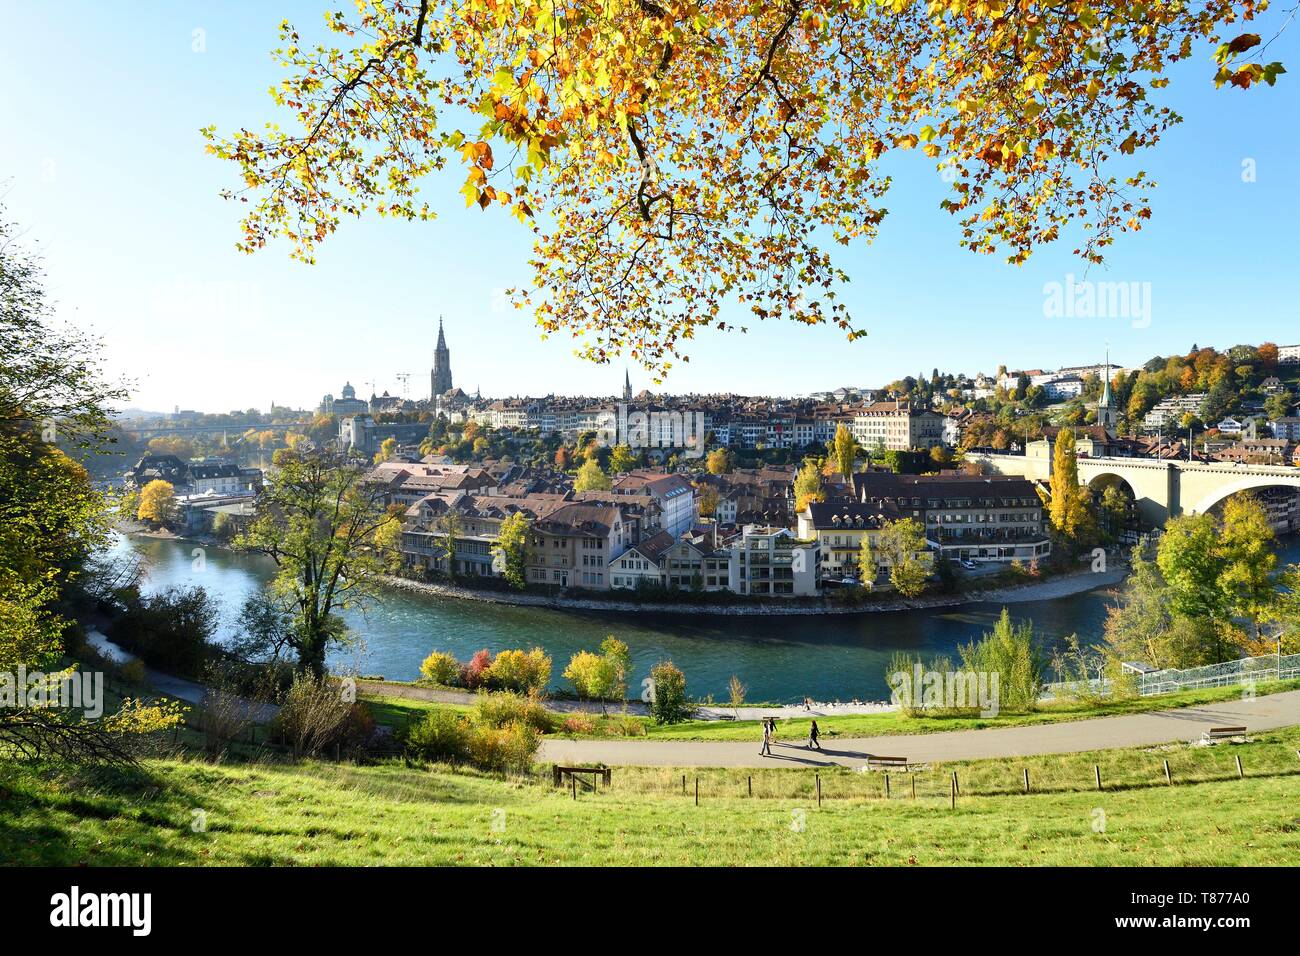 La Suisse, canton de Berne, Berne, vue générale de la vieille ville inscrite au Patrimoine Mondial de l'UNESCO, la cathédrale Saint-vincent (Munster) Bell Tower et pont Nydeggbrücke Aare Banque D'Images